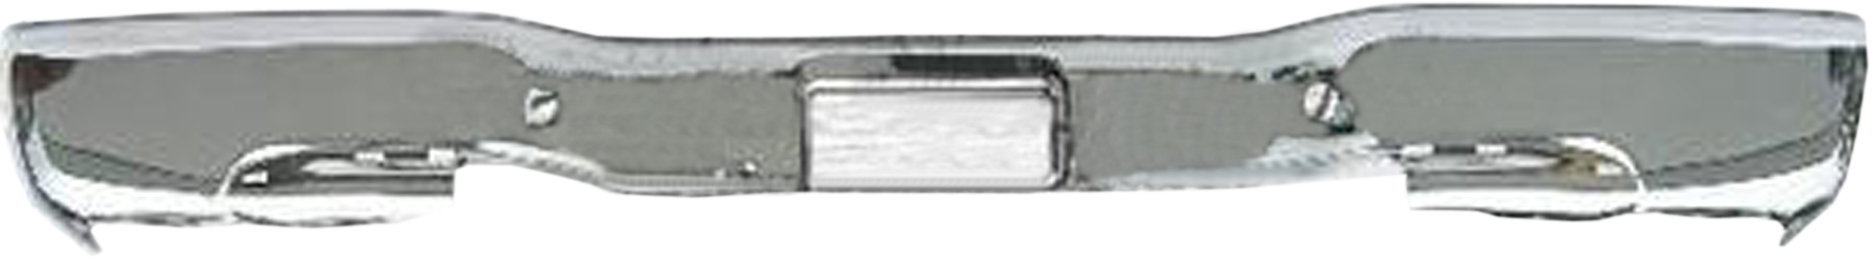 Aftermarket METAL REAR BUMPERS for GMC - SIERRA 3500 CLASSIC, SIERRA 3500 CLASSIC,07-07,Rear bumper face bar